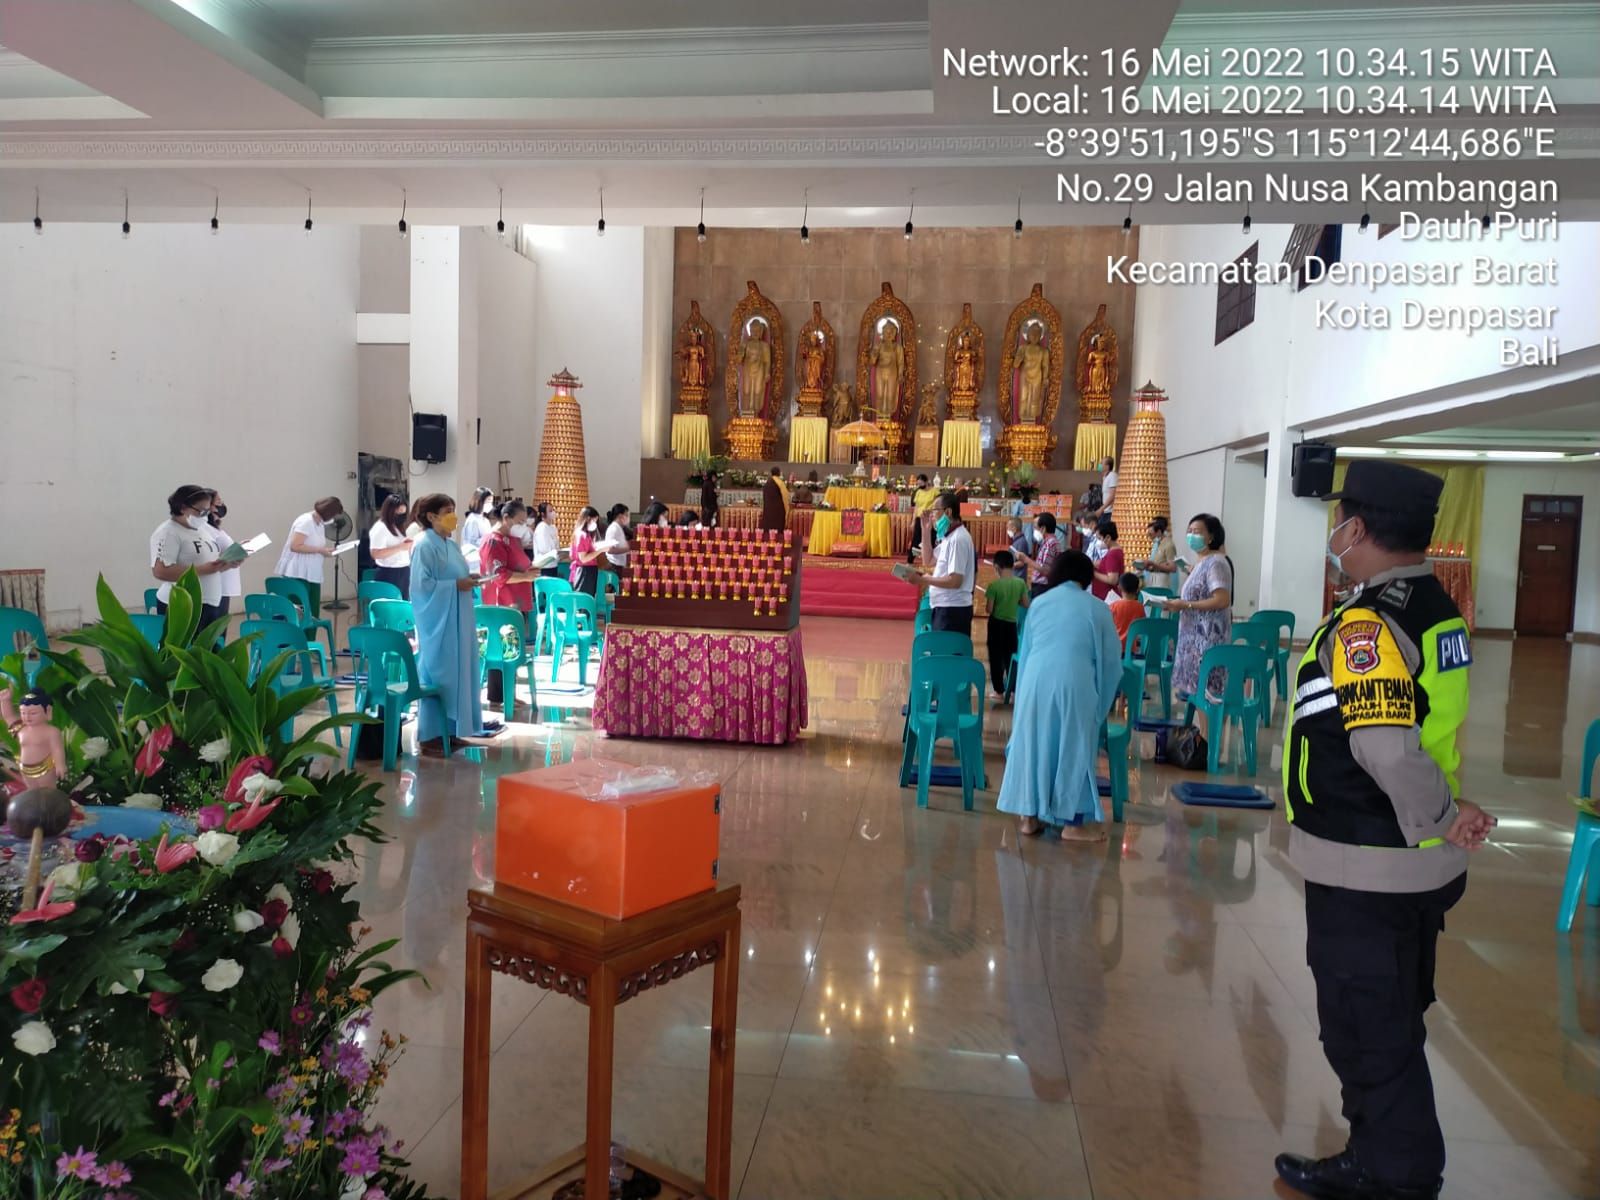 Personel Polsek Denpasar Barat turu menjaga keamanan umat yang merayakan Hari Raya Waisak, Senin 16 Mei 2022.